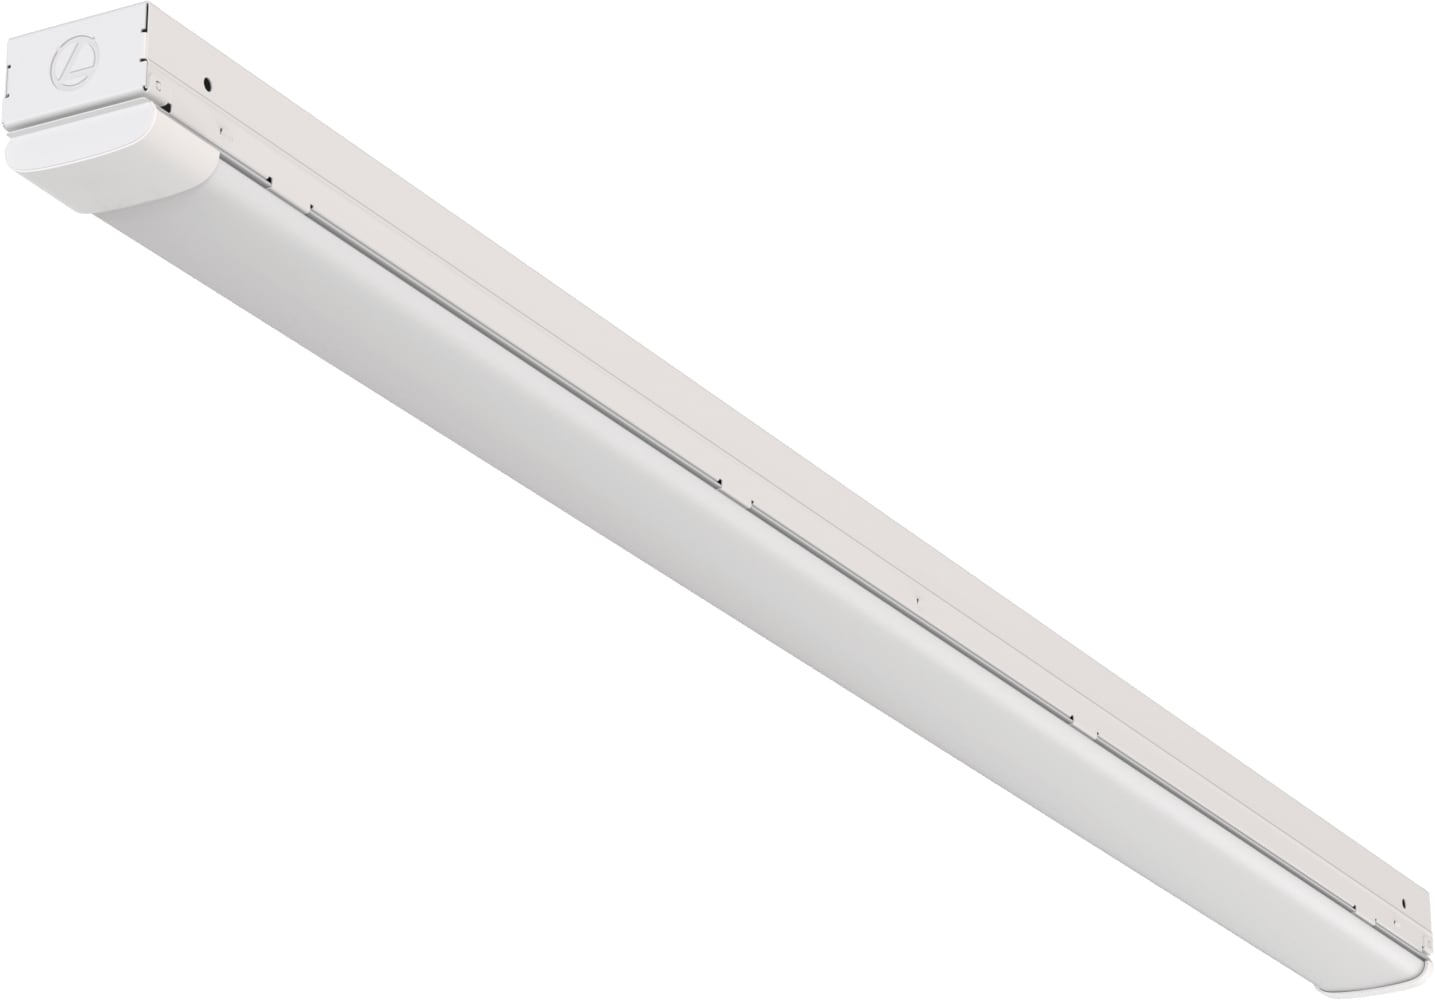 Lithonia Lighting 4-ft 2-Light Cool White LED Strip Light in the